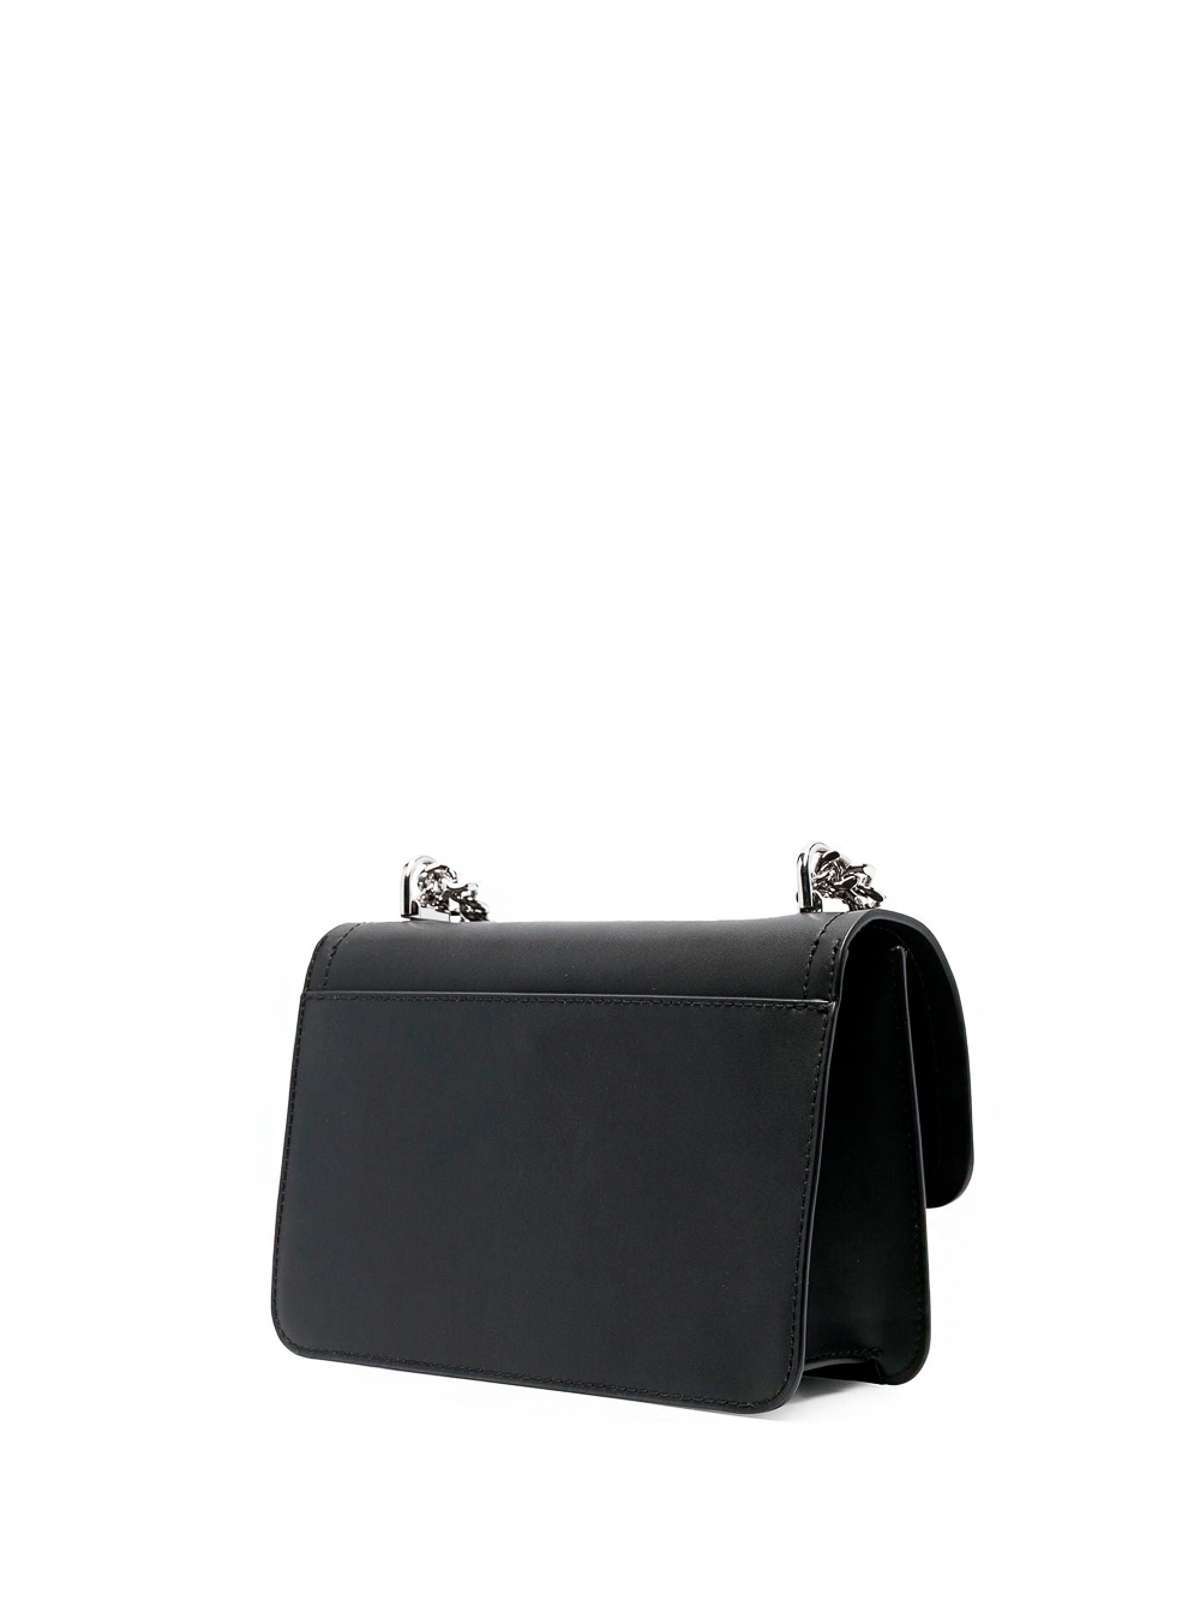 Buy Michael Kors Heather Large Leather Shoulder Bag - Black